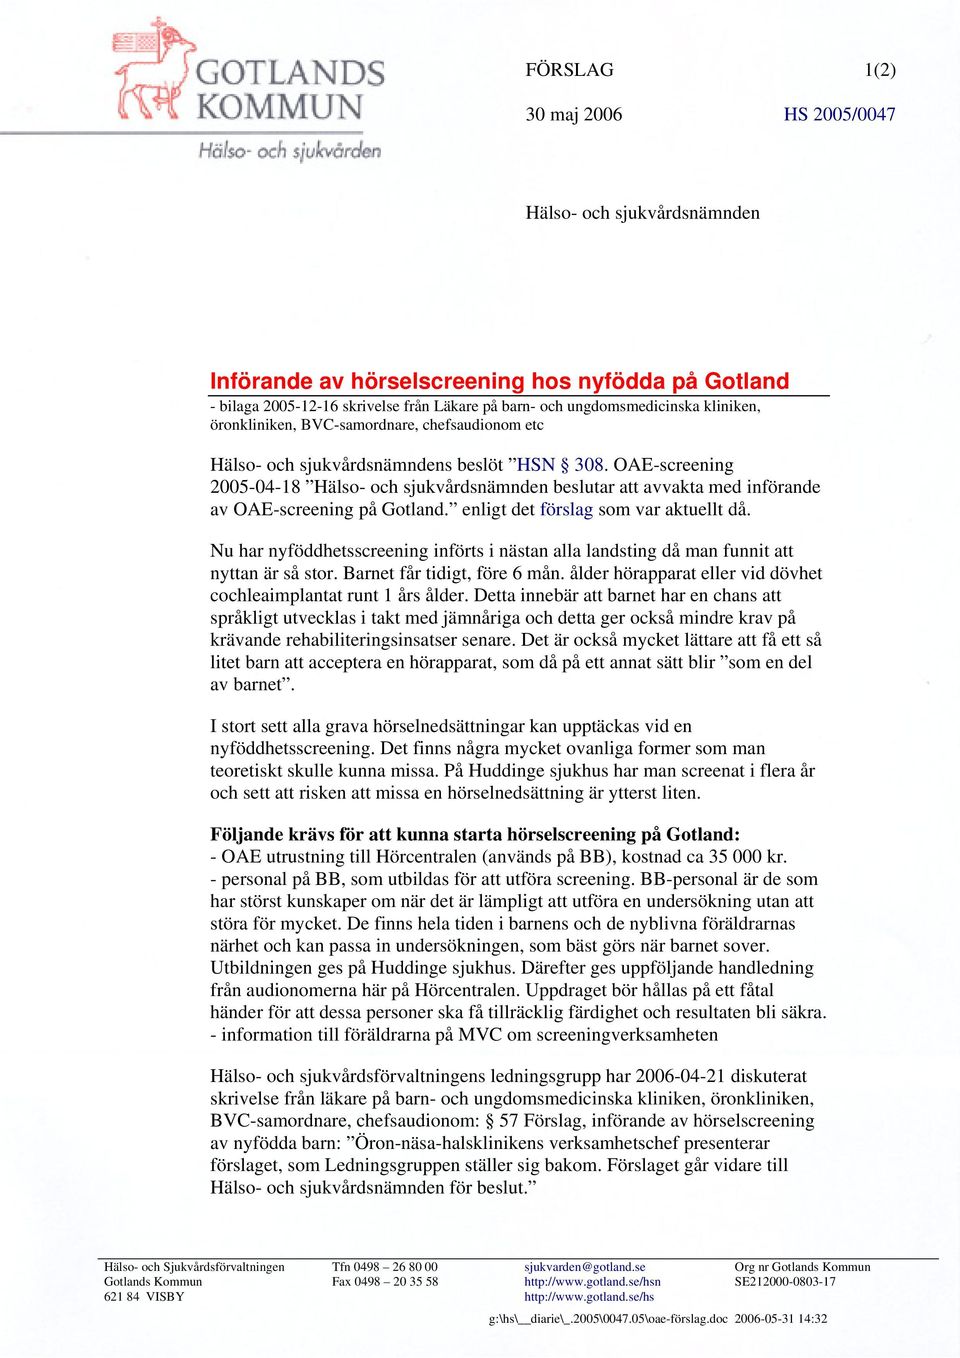 OAE-screening 2005-04-18 Hälso- och sjukvårdsnämnden beslutar att avvakta med införande av OAE-screening på Gotland. enligt det förslag som var aktuellt då.